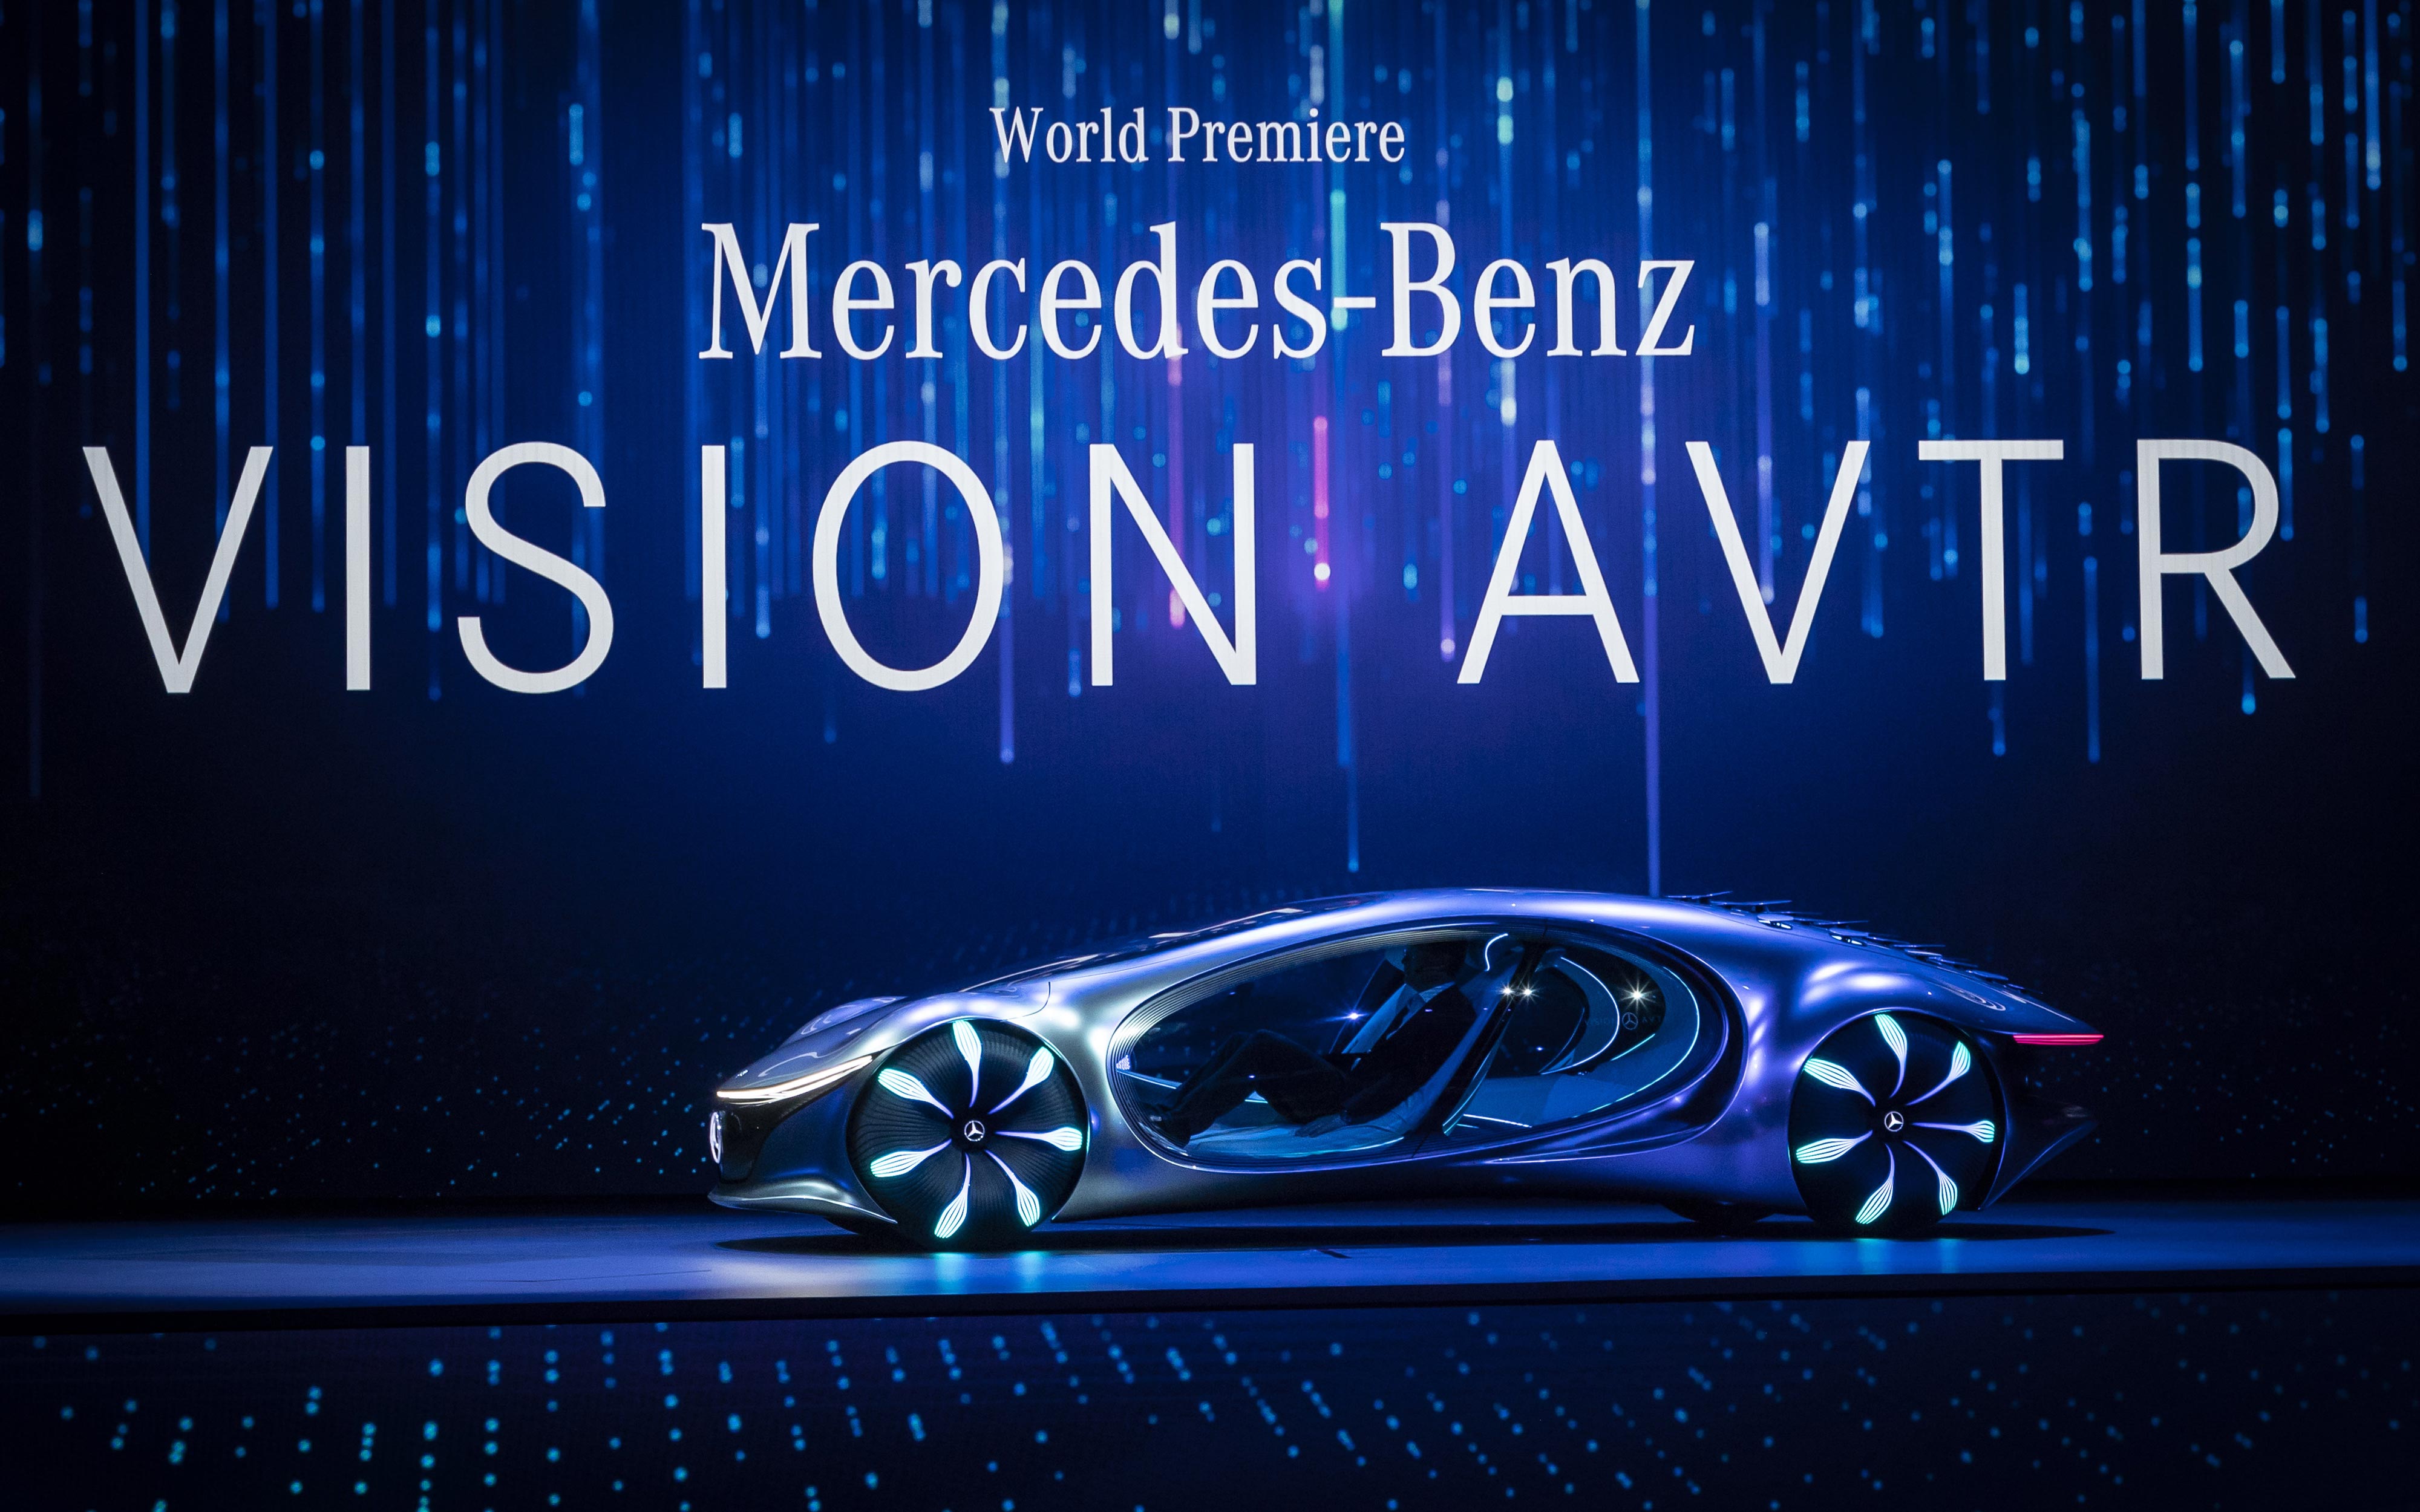  Mercedes Vision AVTR 